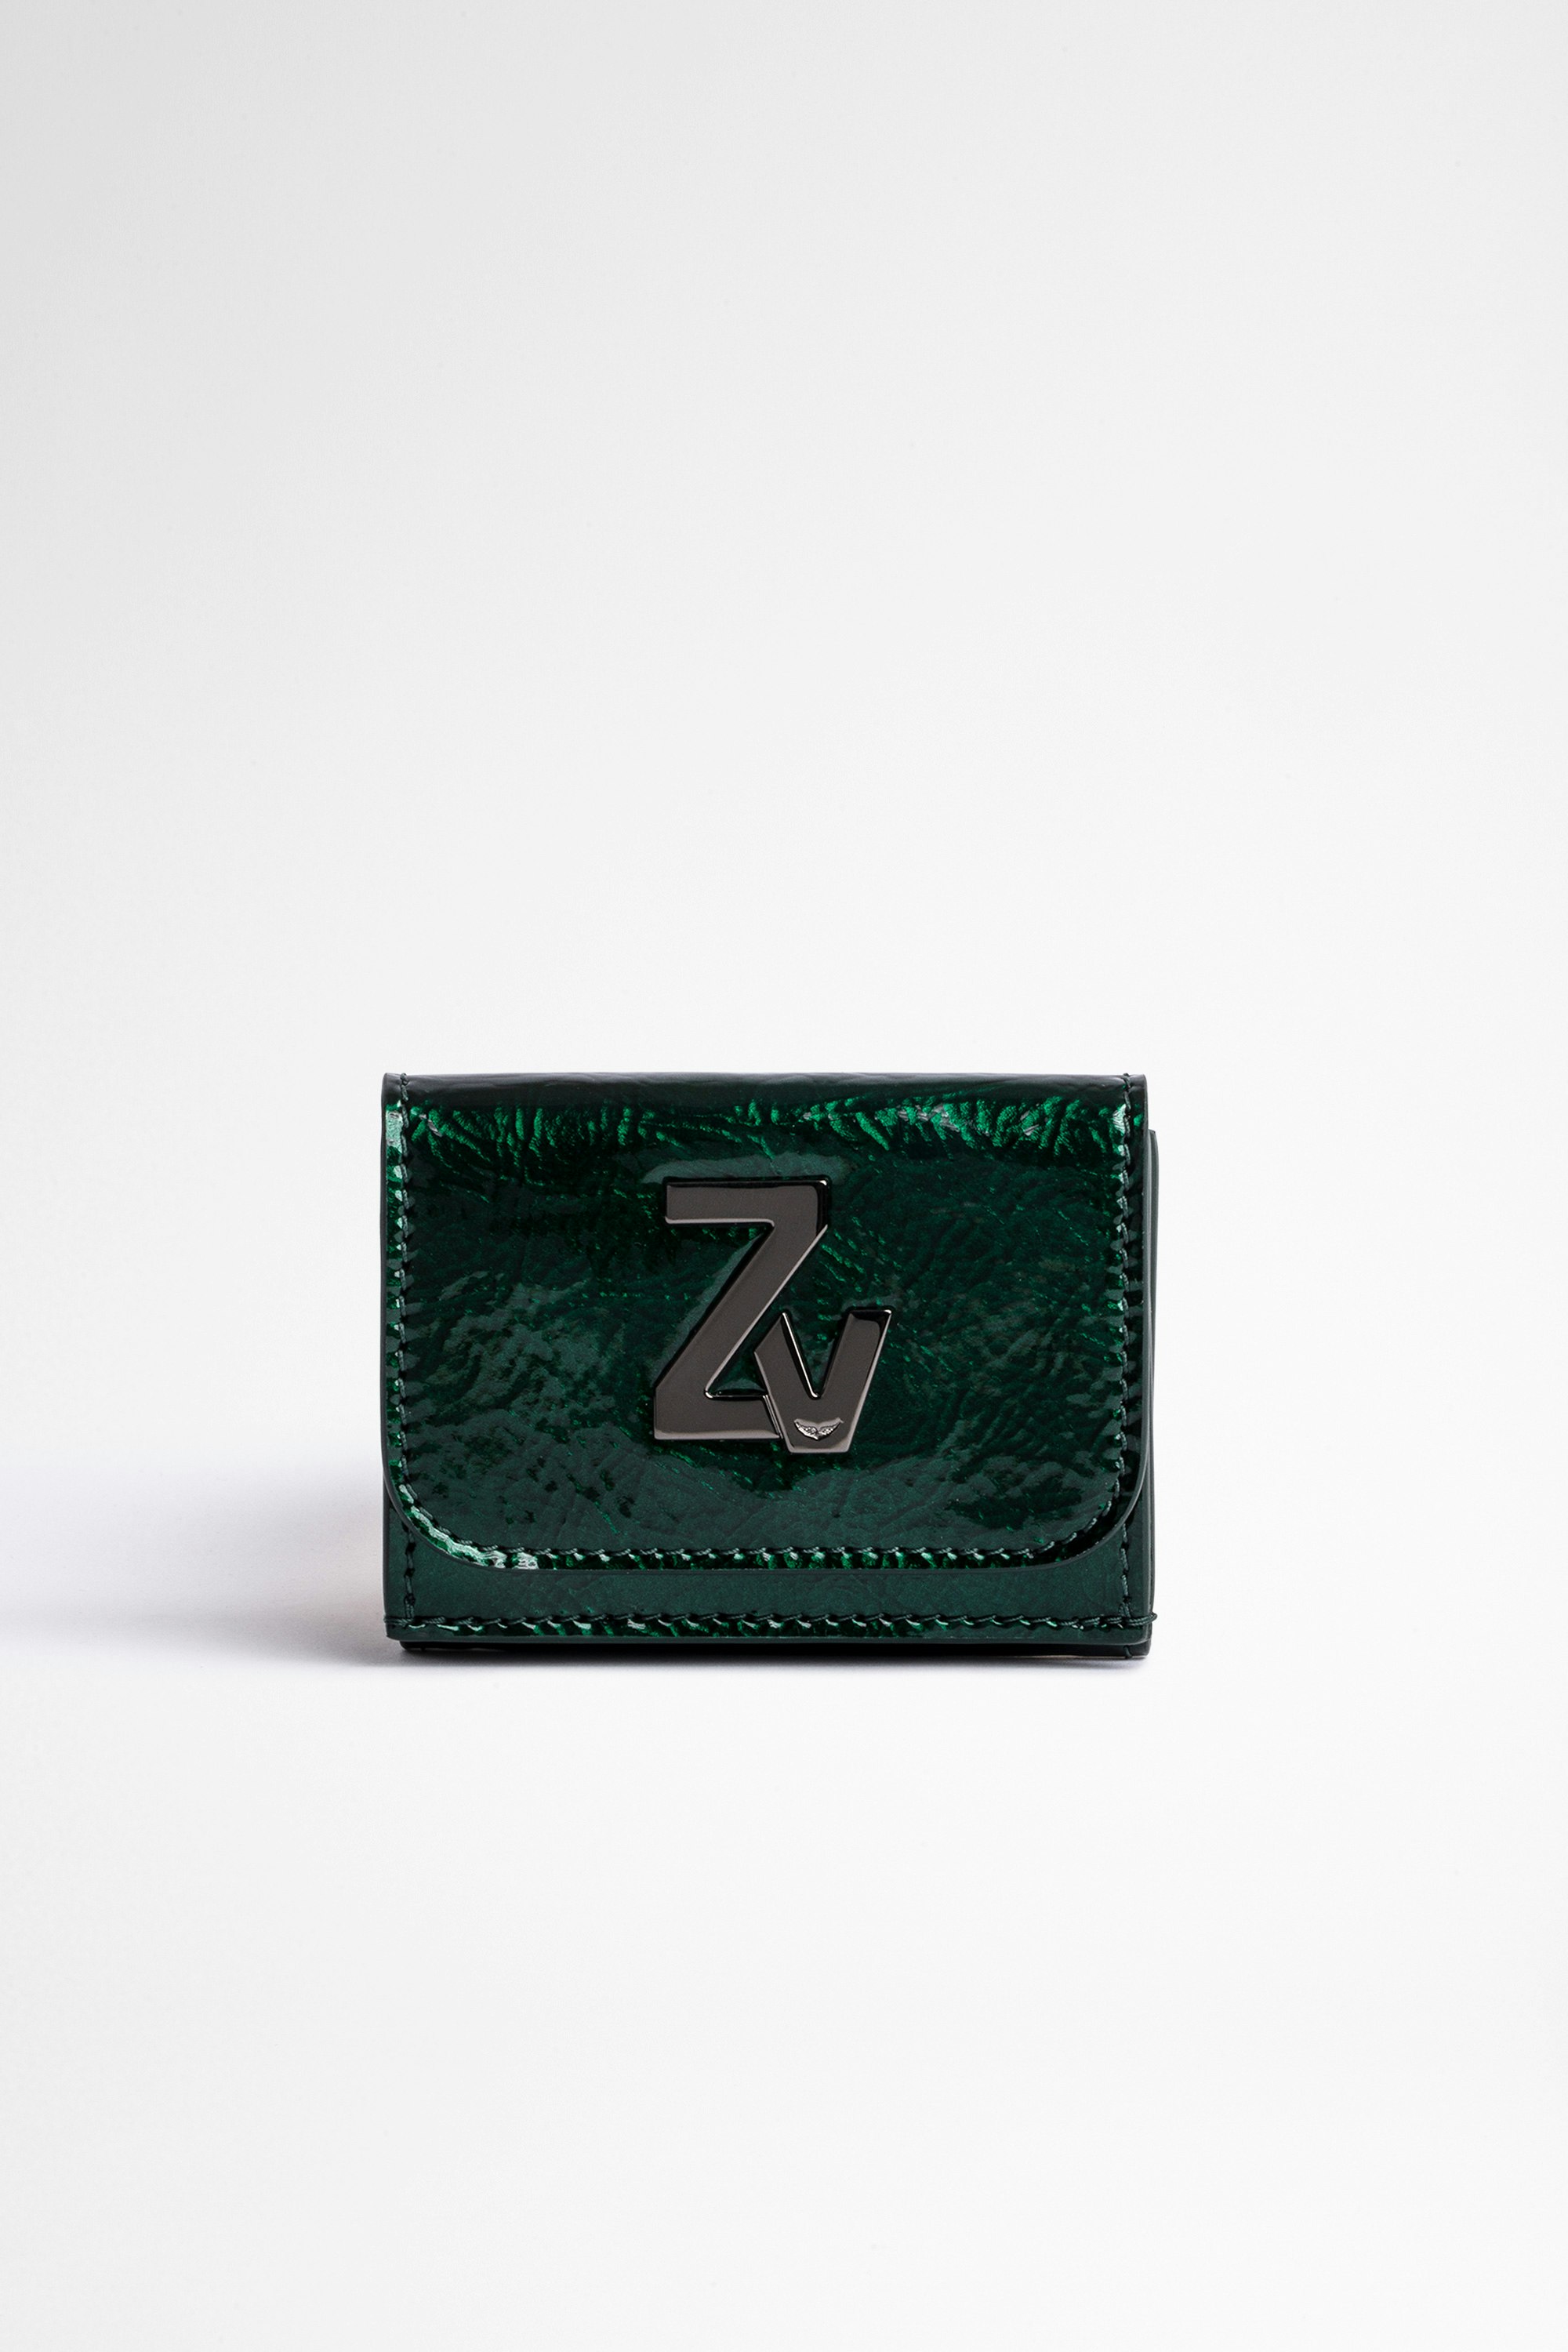 ZV Initiale Le Trifold Wallet Women's mini folding wallet in green metallic leather